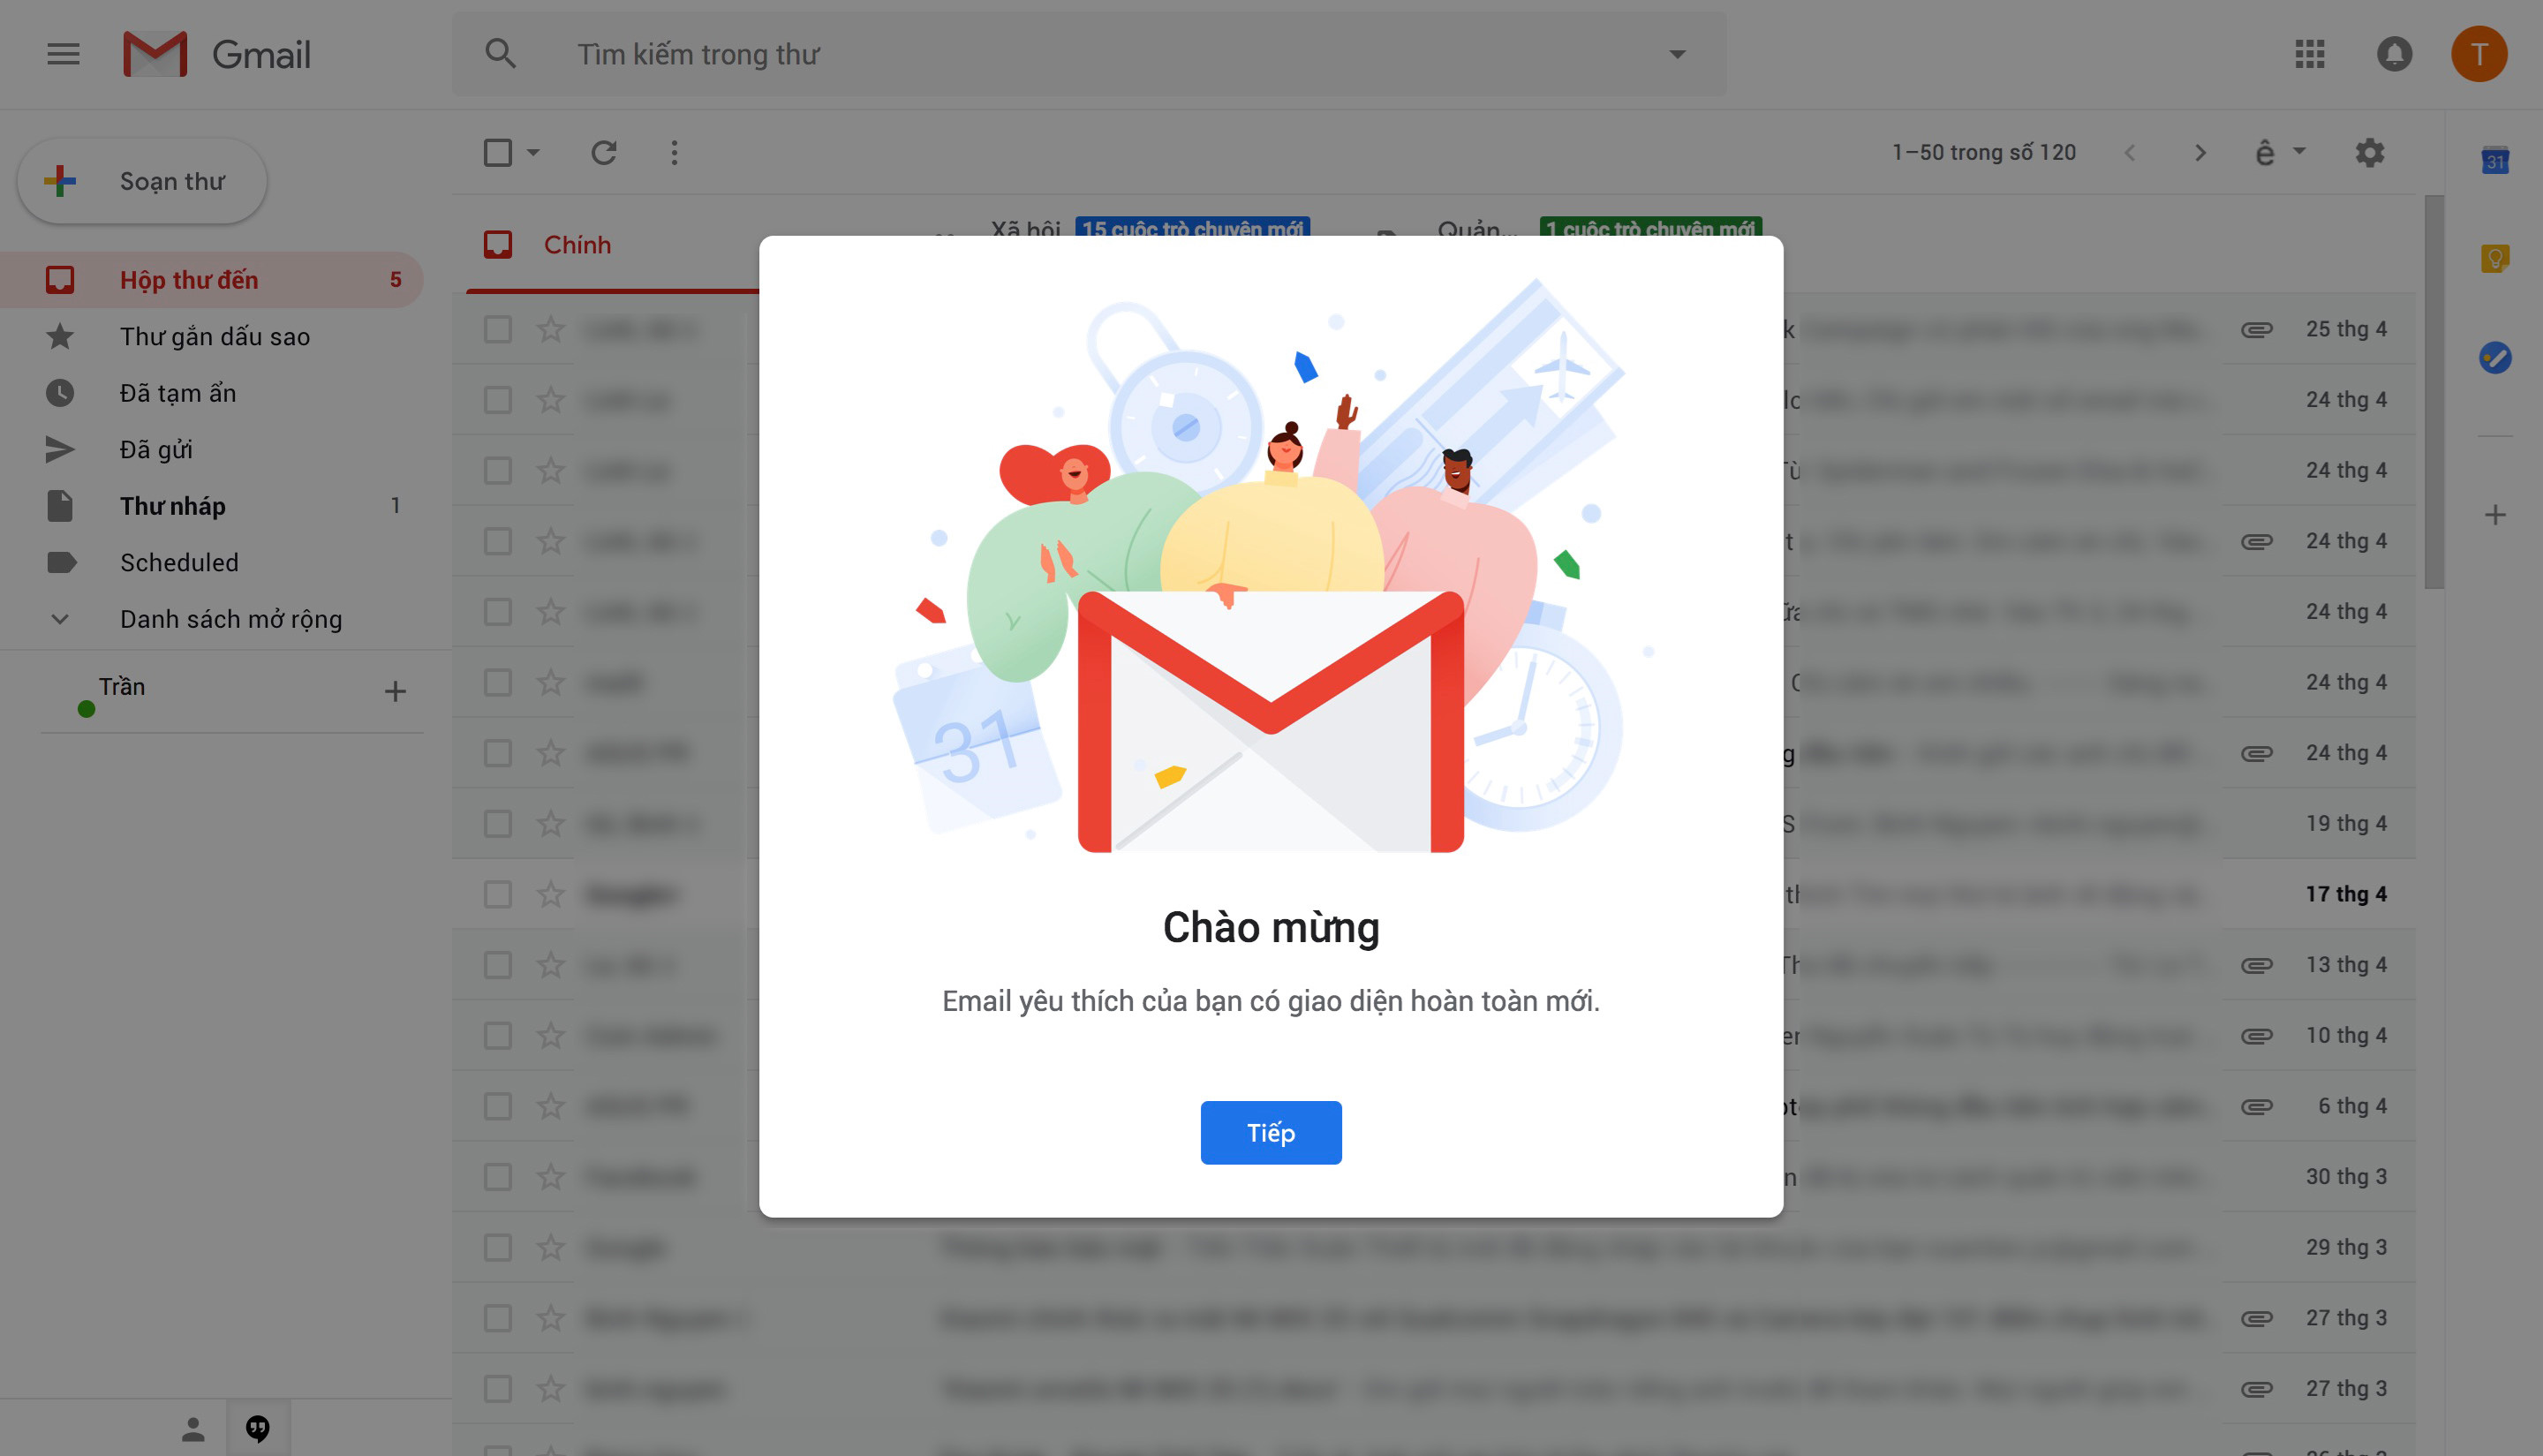 Cách chuyển đổi sang giao diện Gmail mới